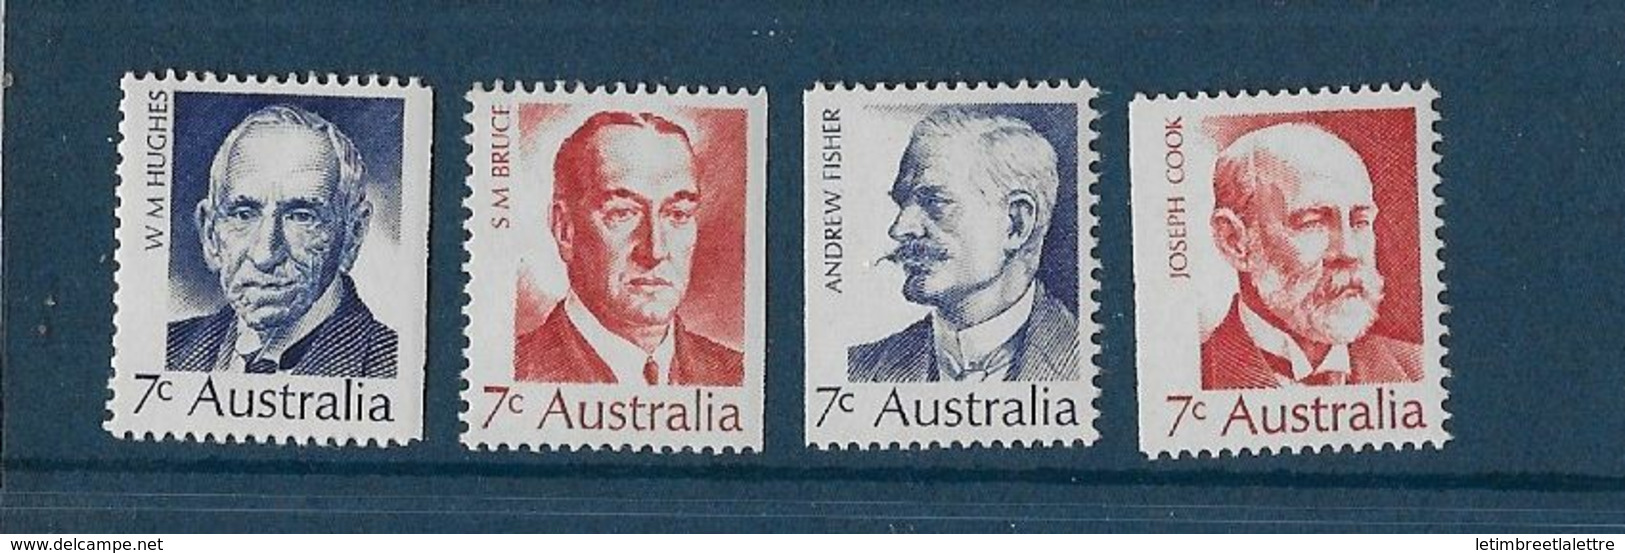 Australie N 457 à 460**                                                                                 ** - Mint Stamps